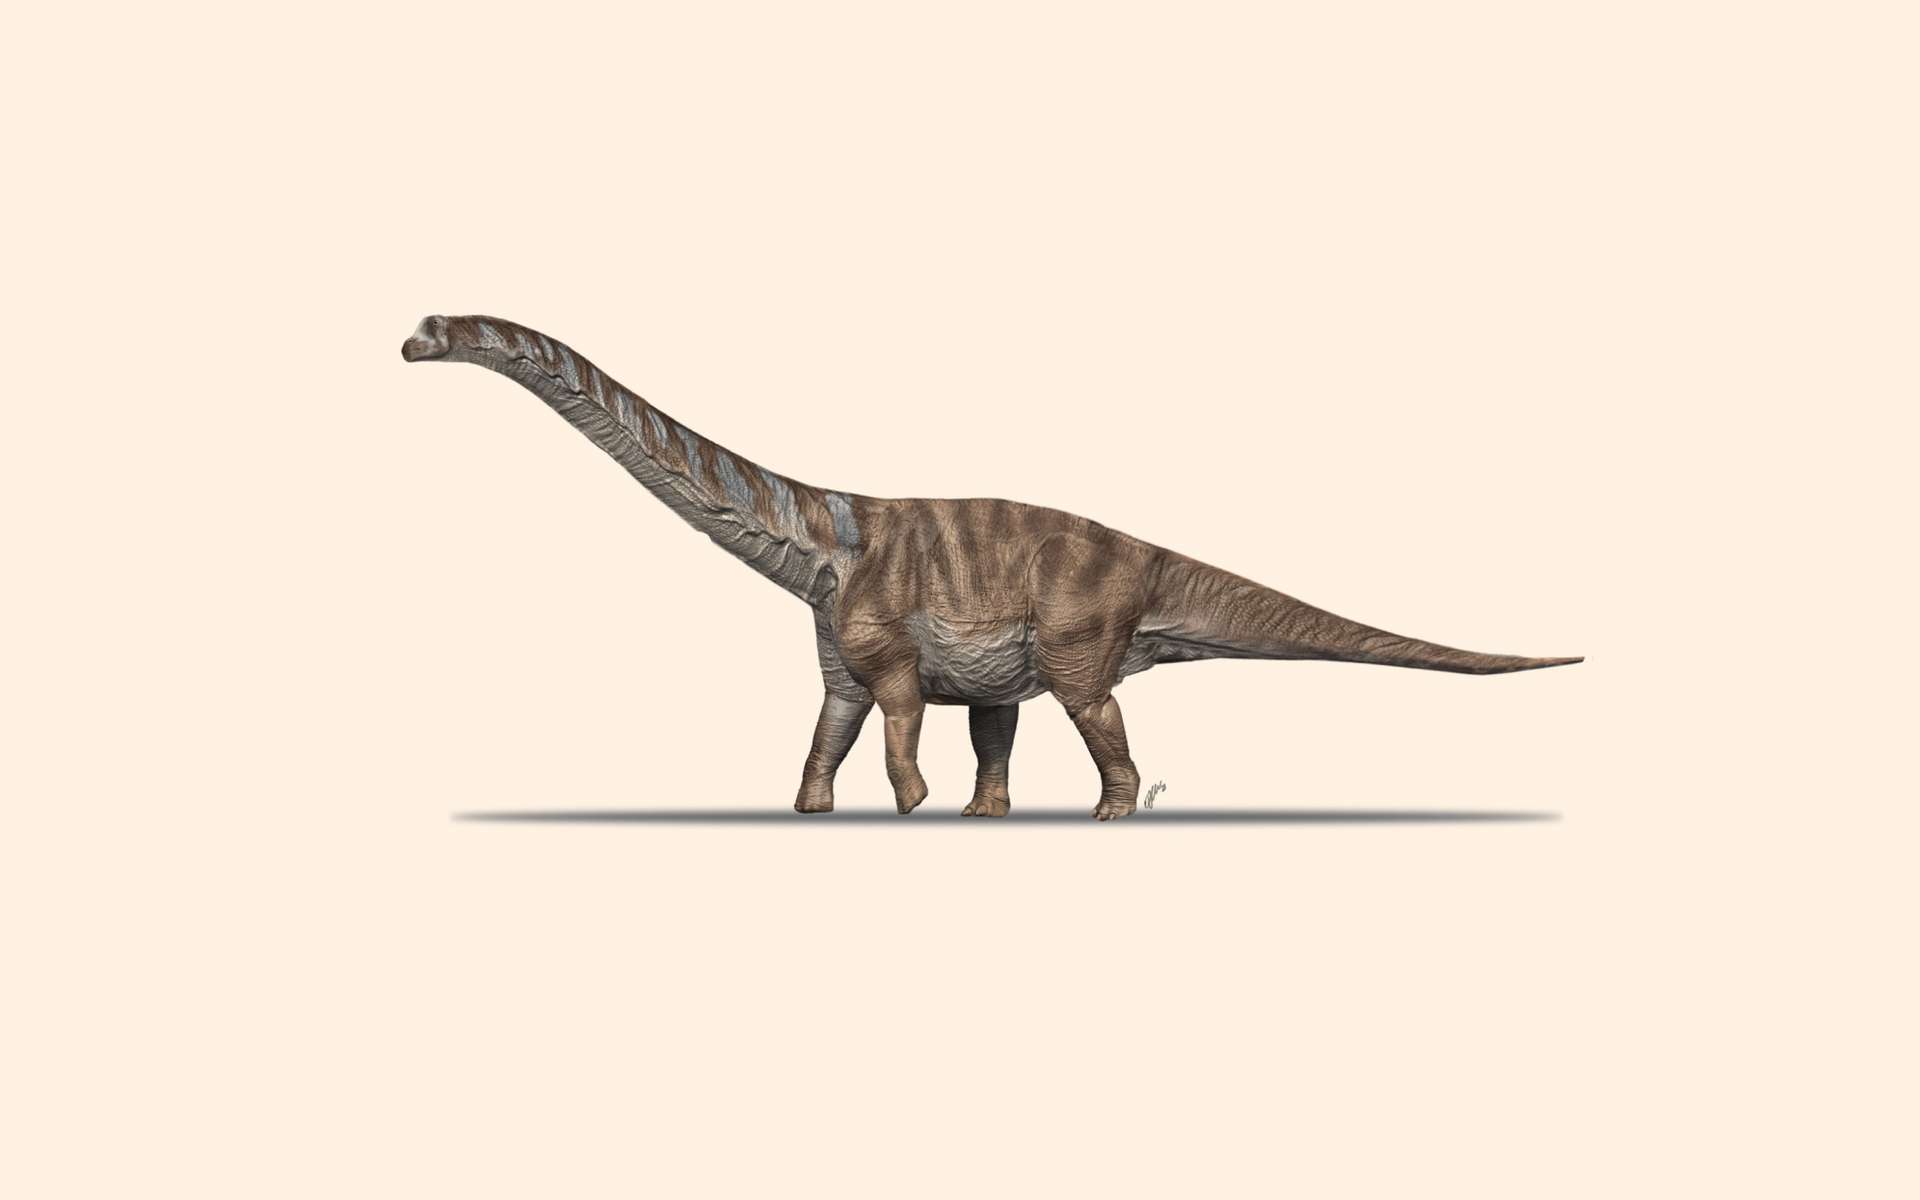 Reconstitution d'une nouvelle espèce de titanosaure retrouvée en Catalogne